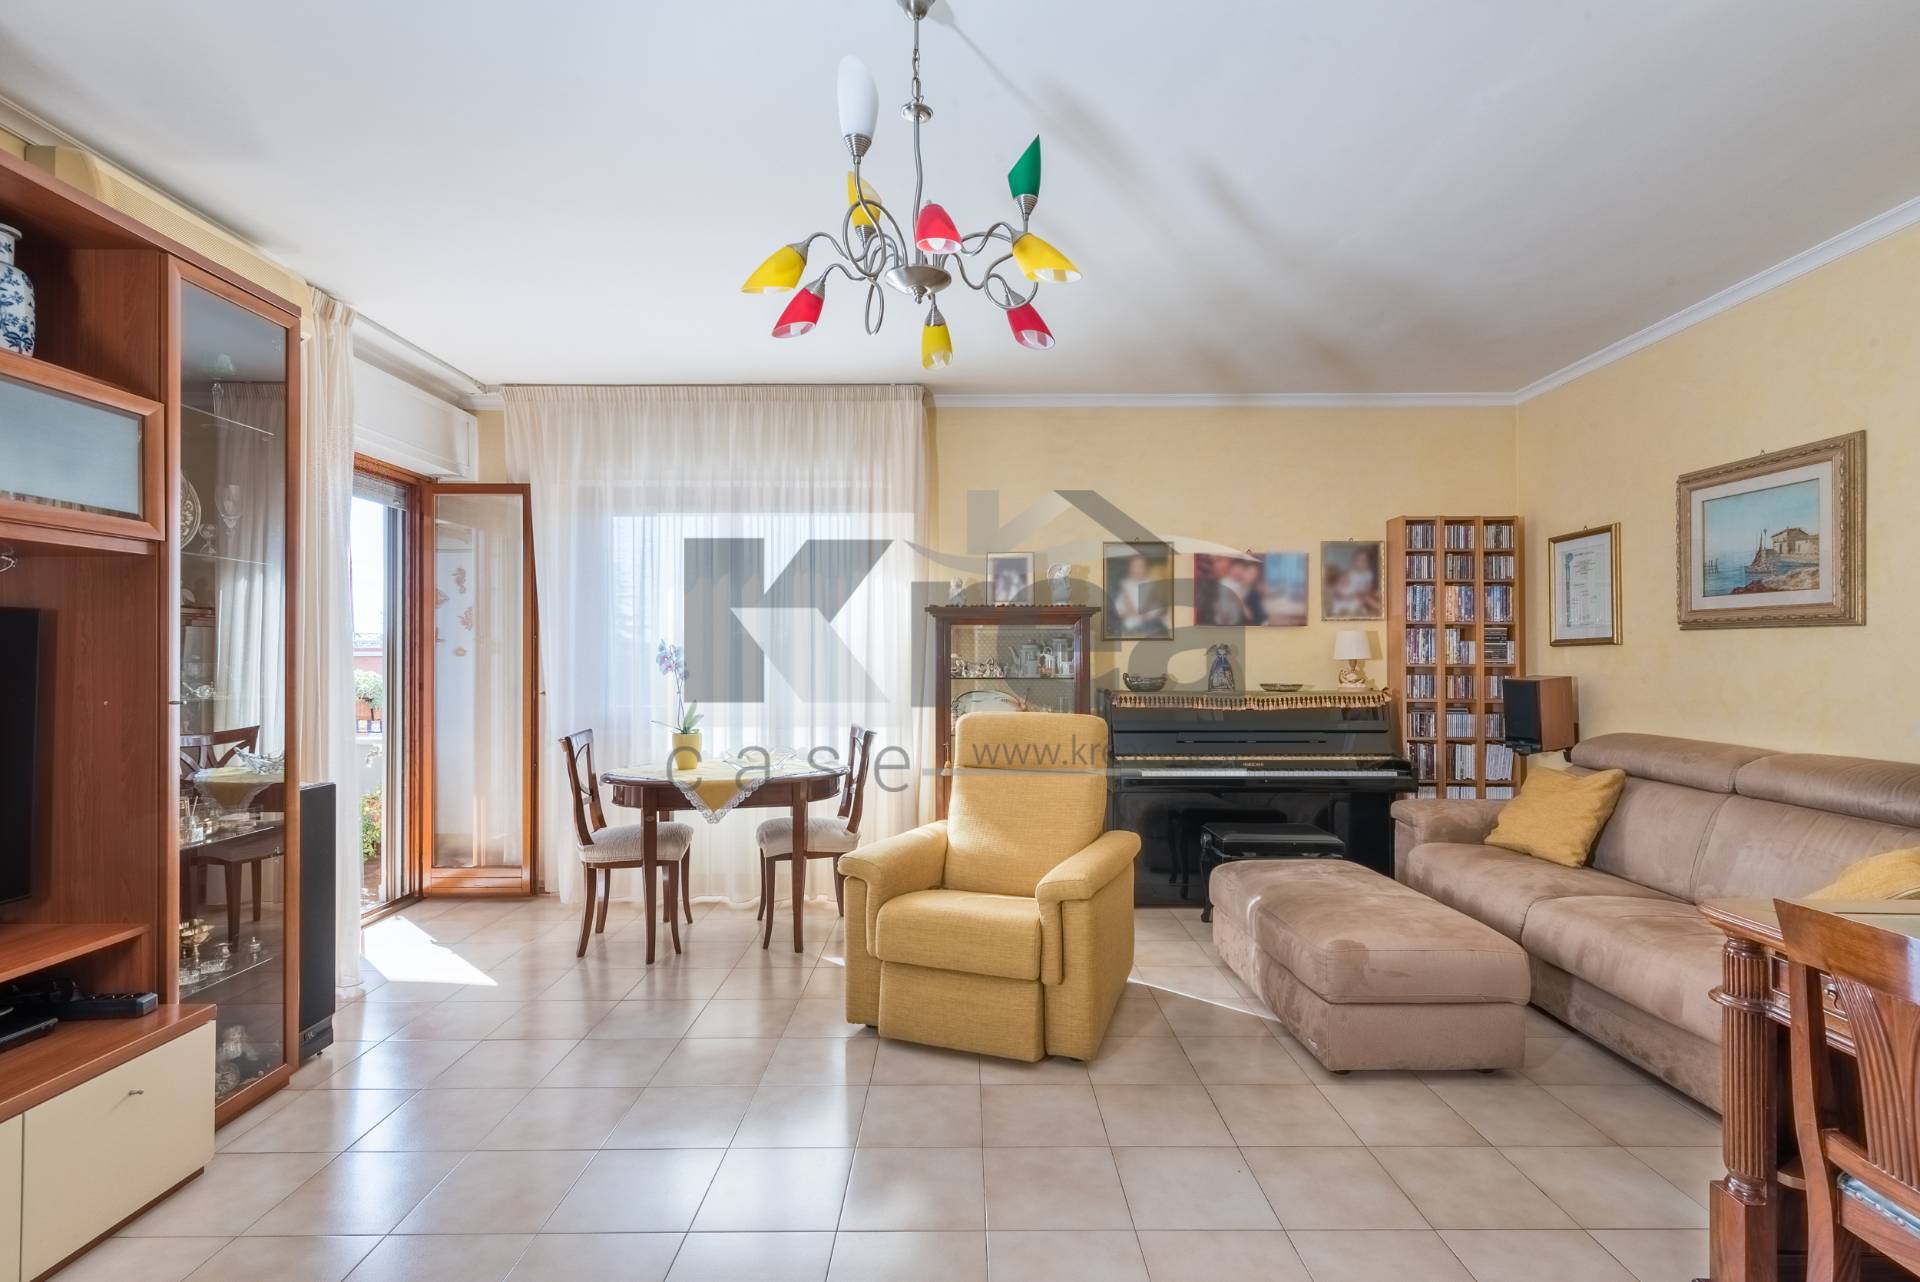 Appartamento in vendita a Ciampino, 3 locali, zona Località: MuradeiFrancesi, prezzo € 235.000 | CambioCasa.it